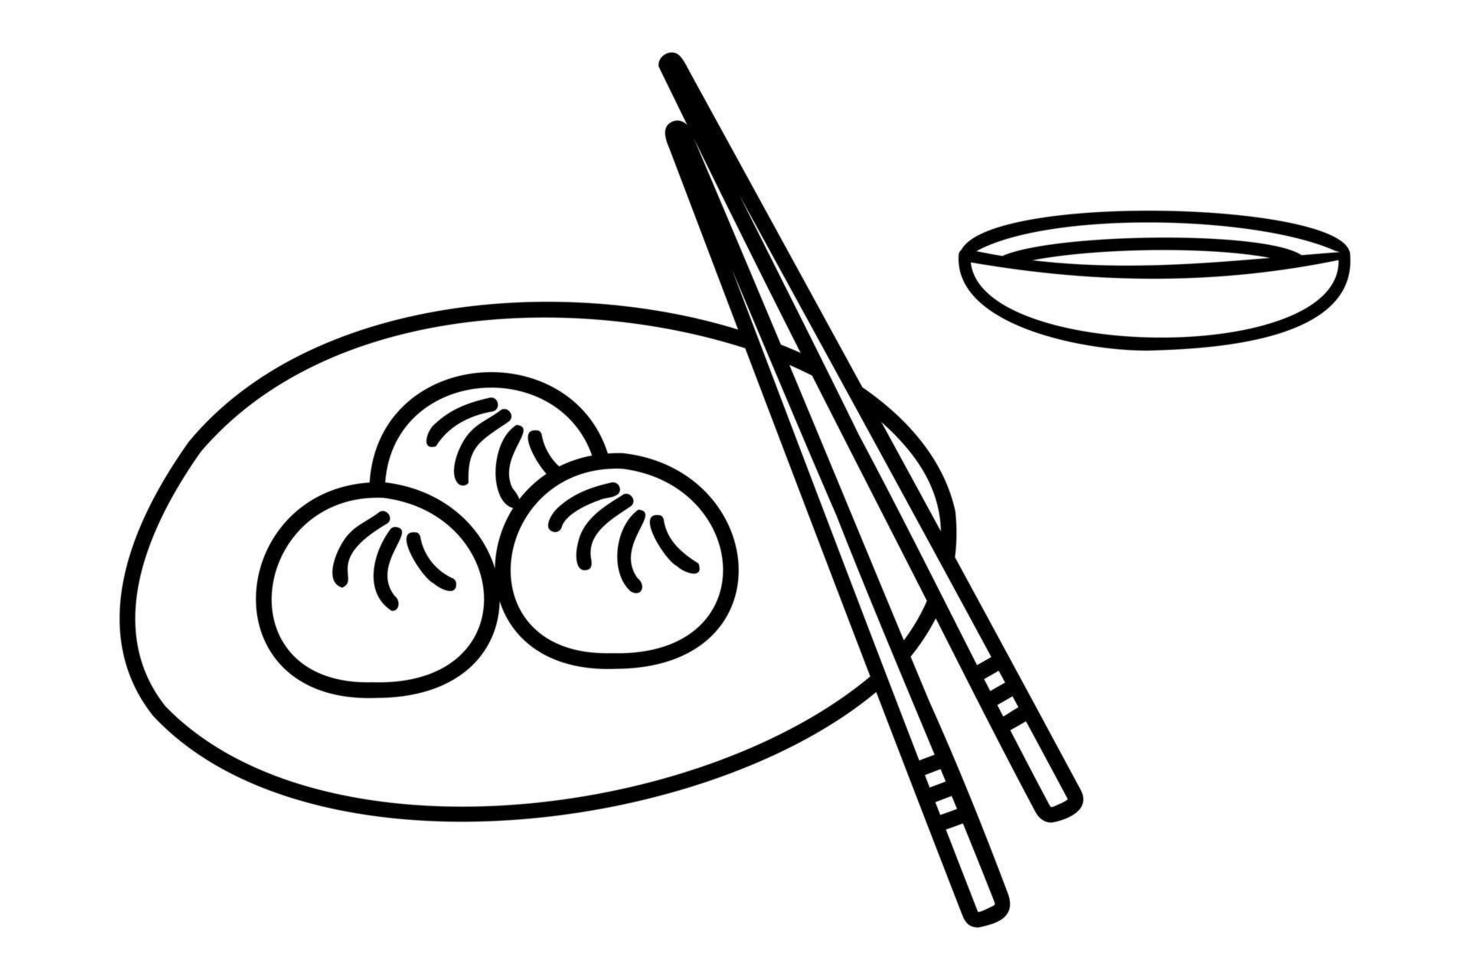 bolinhos chineses wontons em um fundo branco. comida asiática. ilustração de doodle para restaurantes, menus, decoração vetor